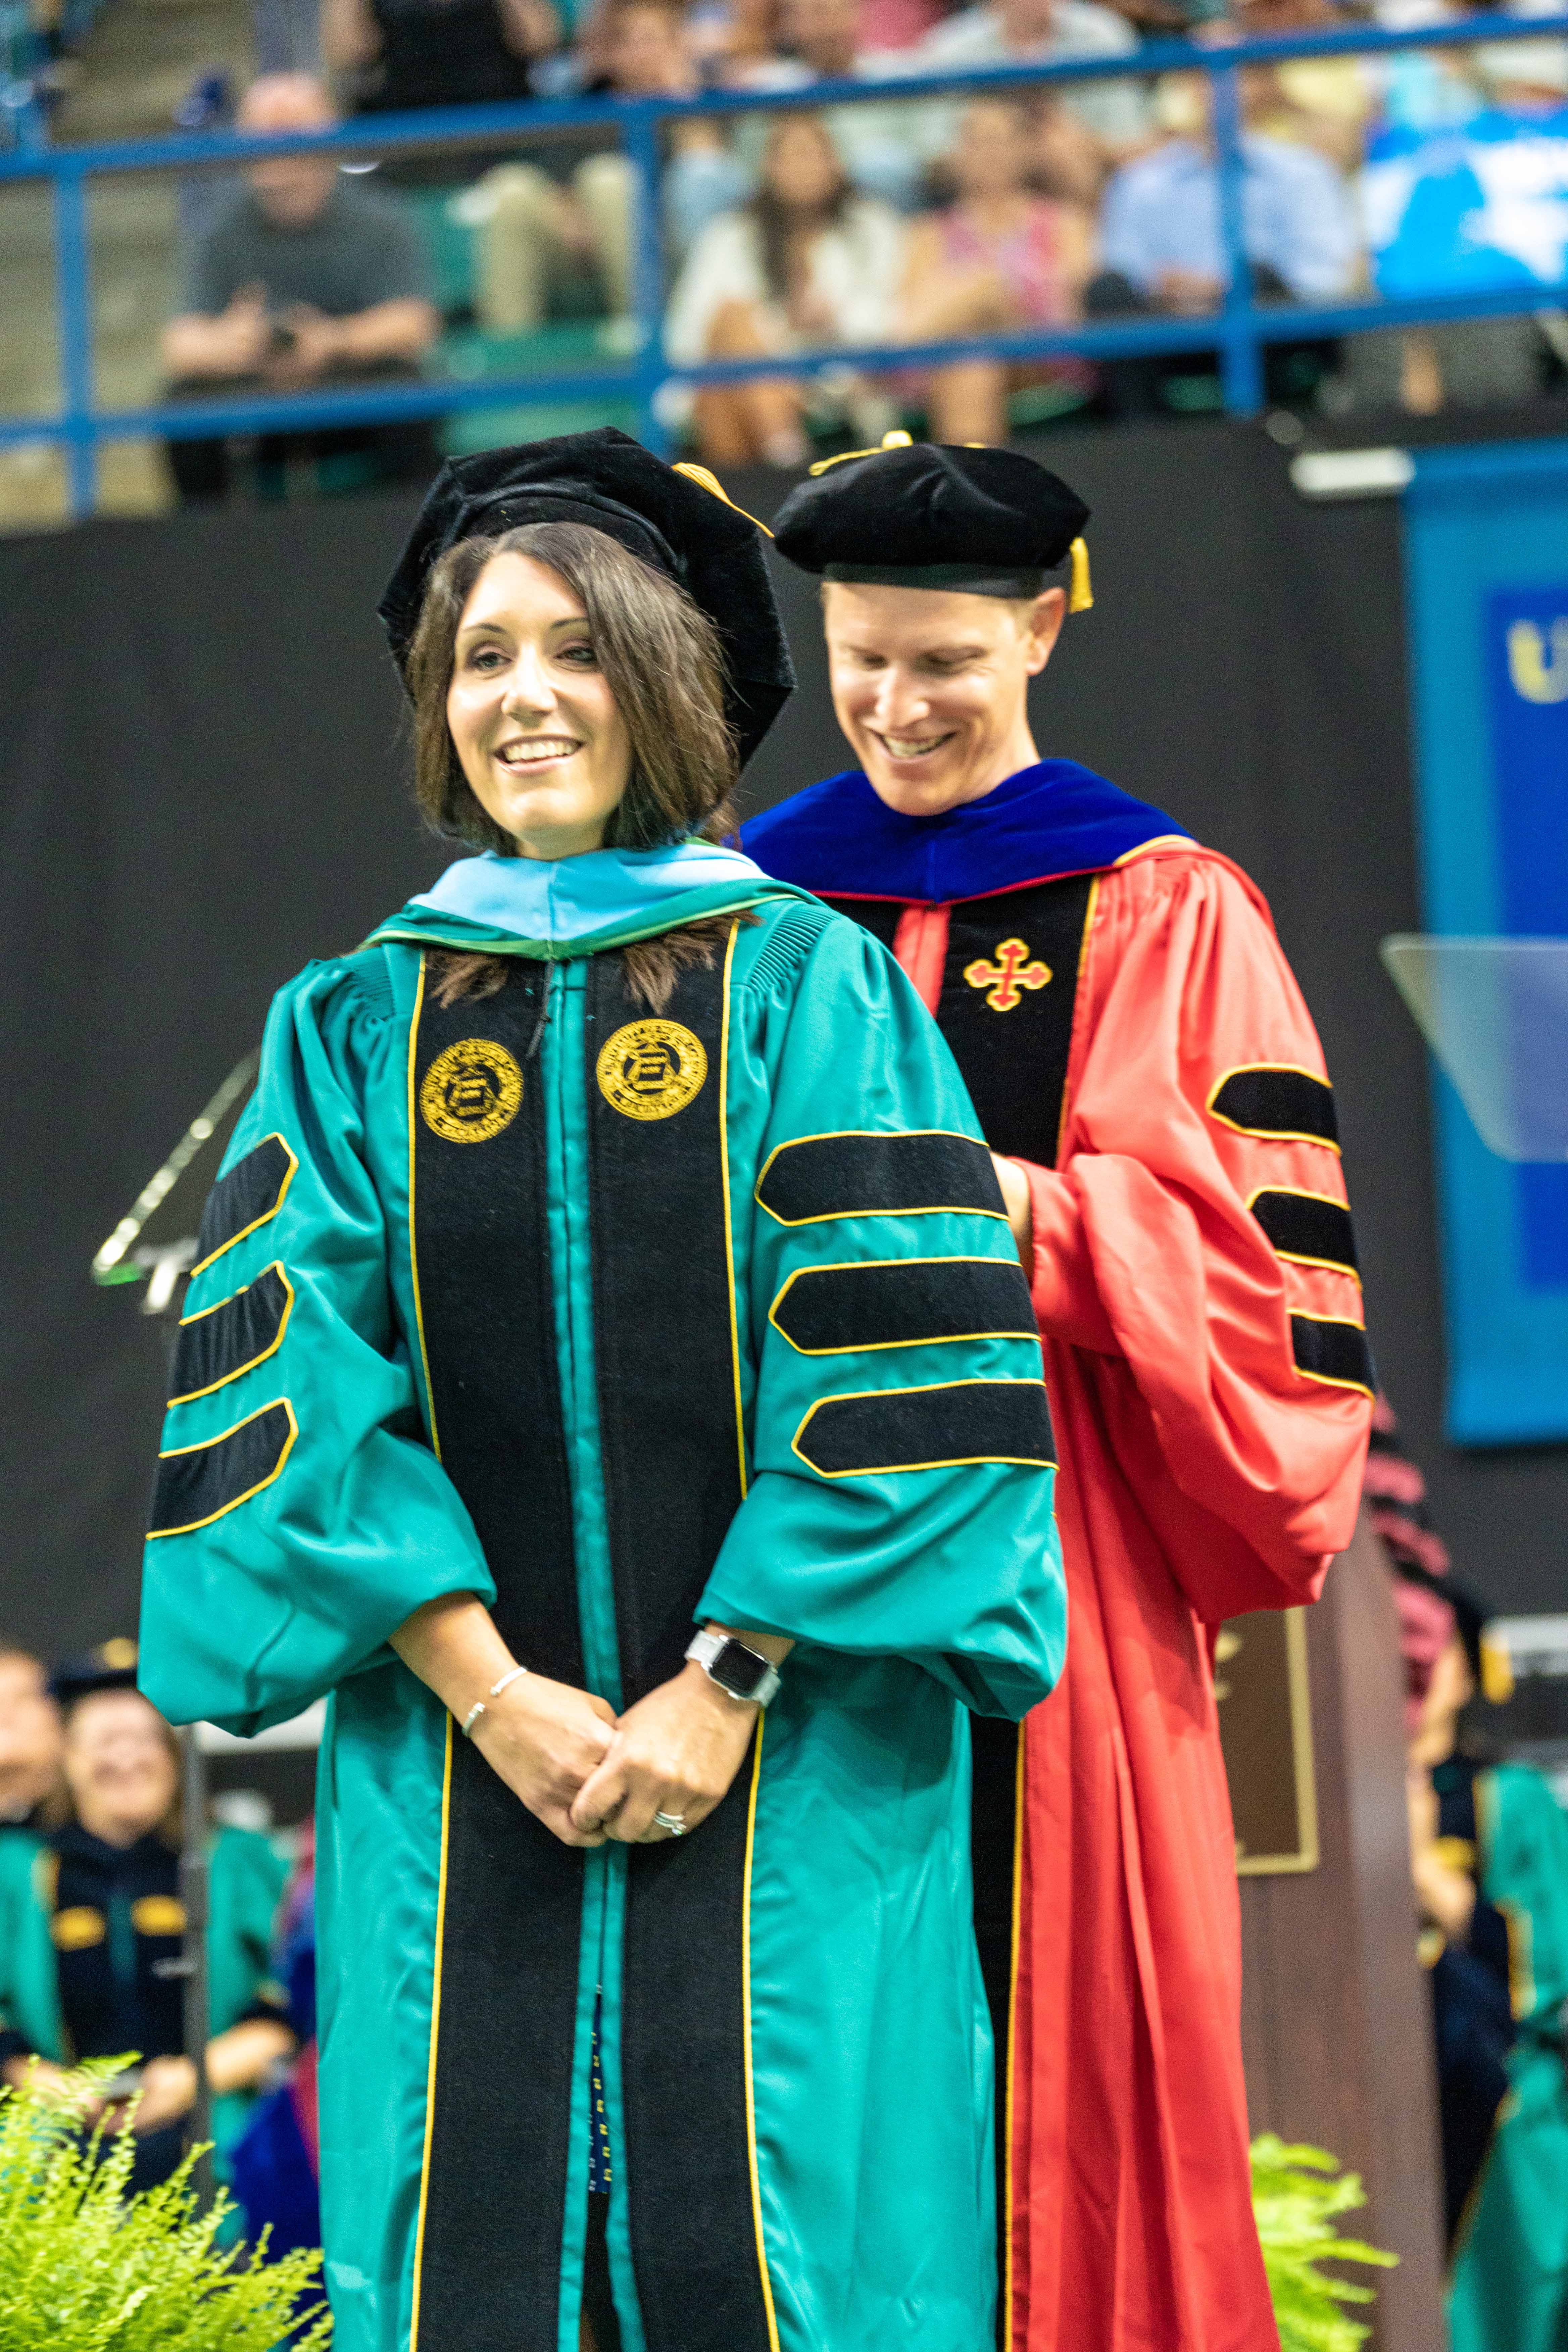 Stefanie Norris receiving her doctorate.